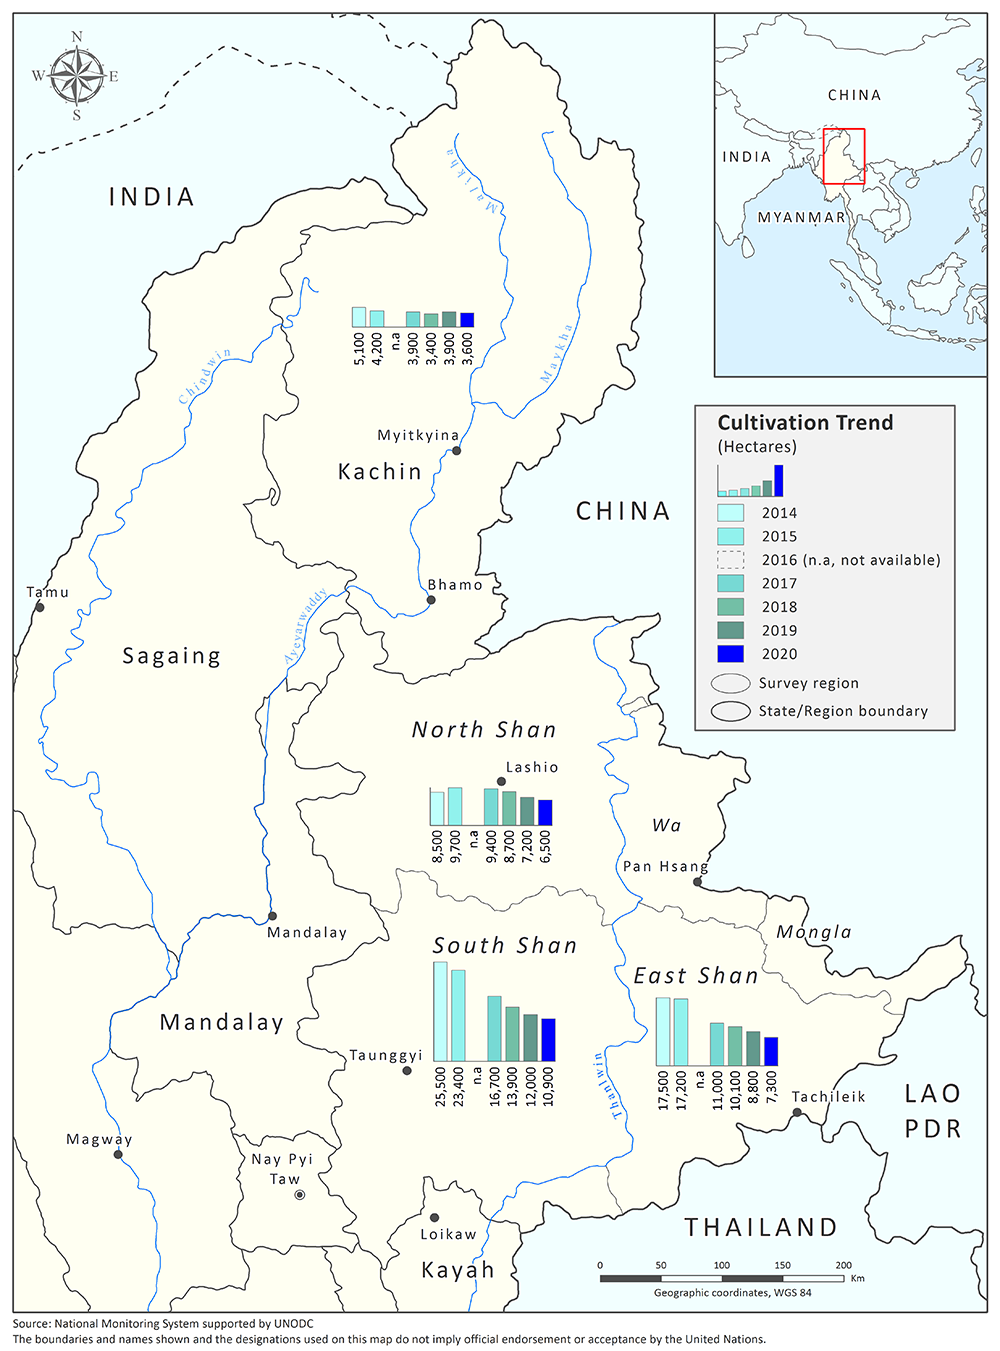 <p>Opium poppy cultivation trends in Myanmar, 2015-2020</p>